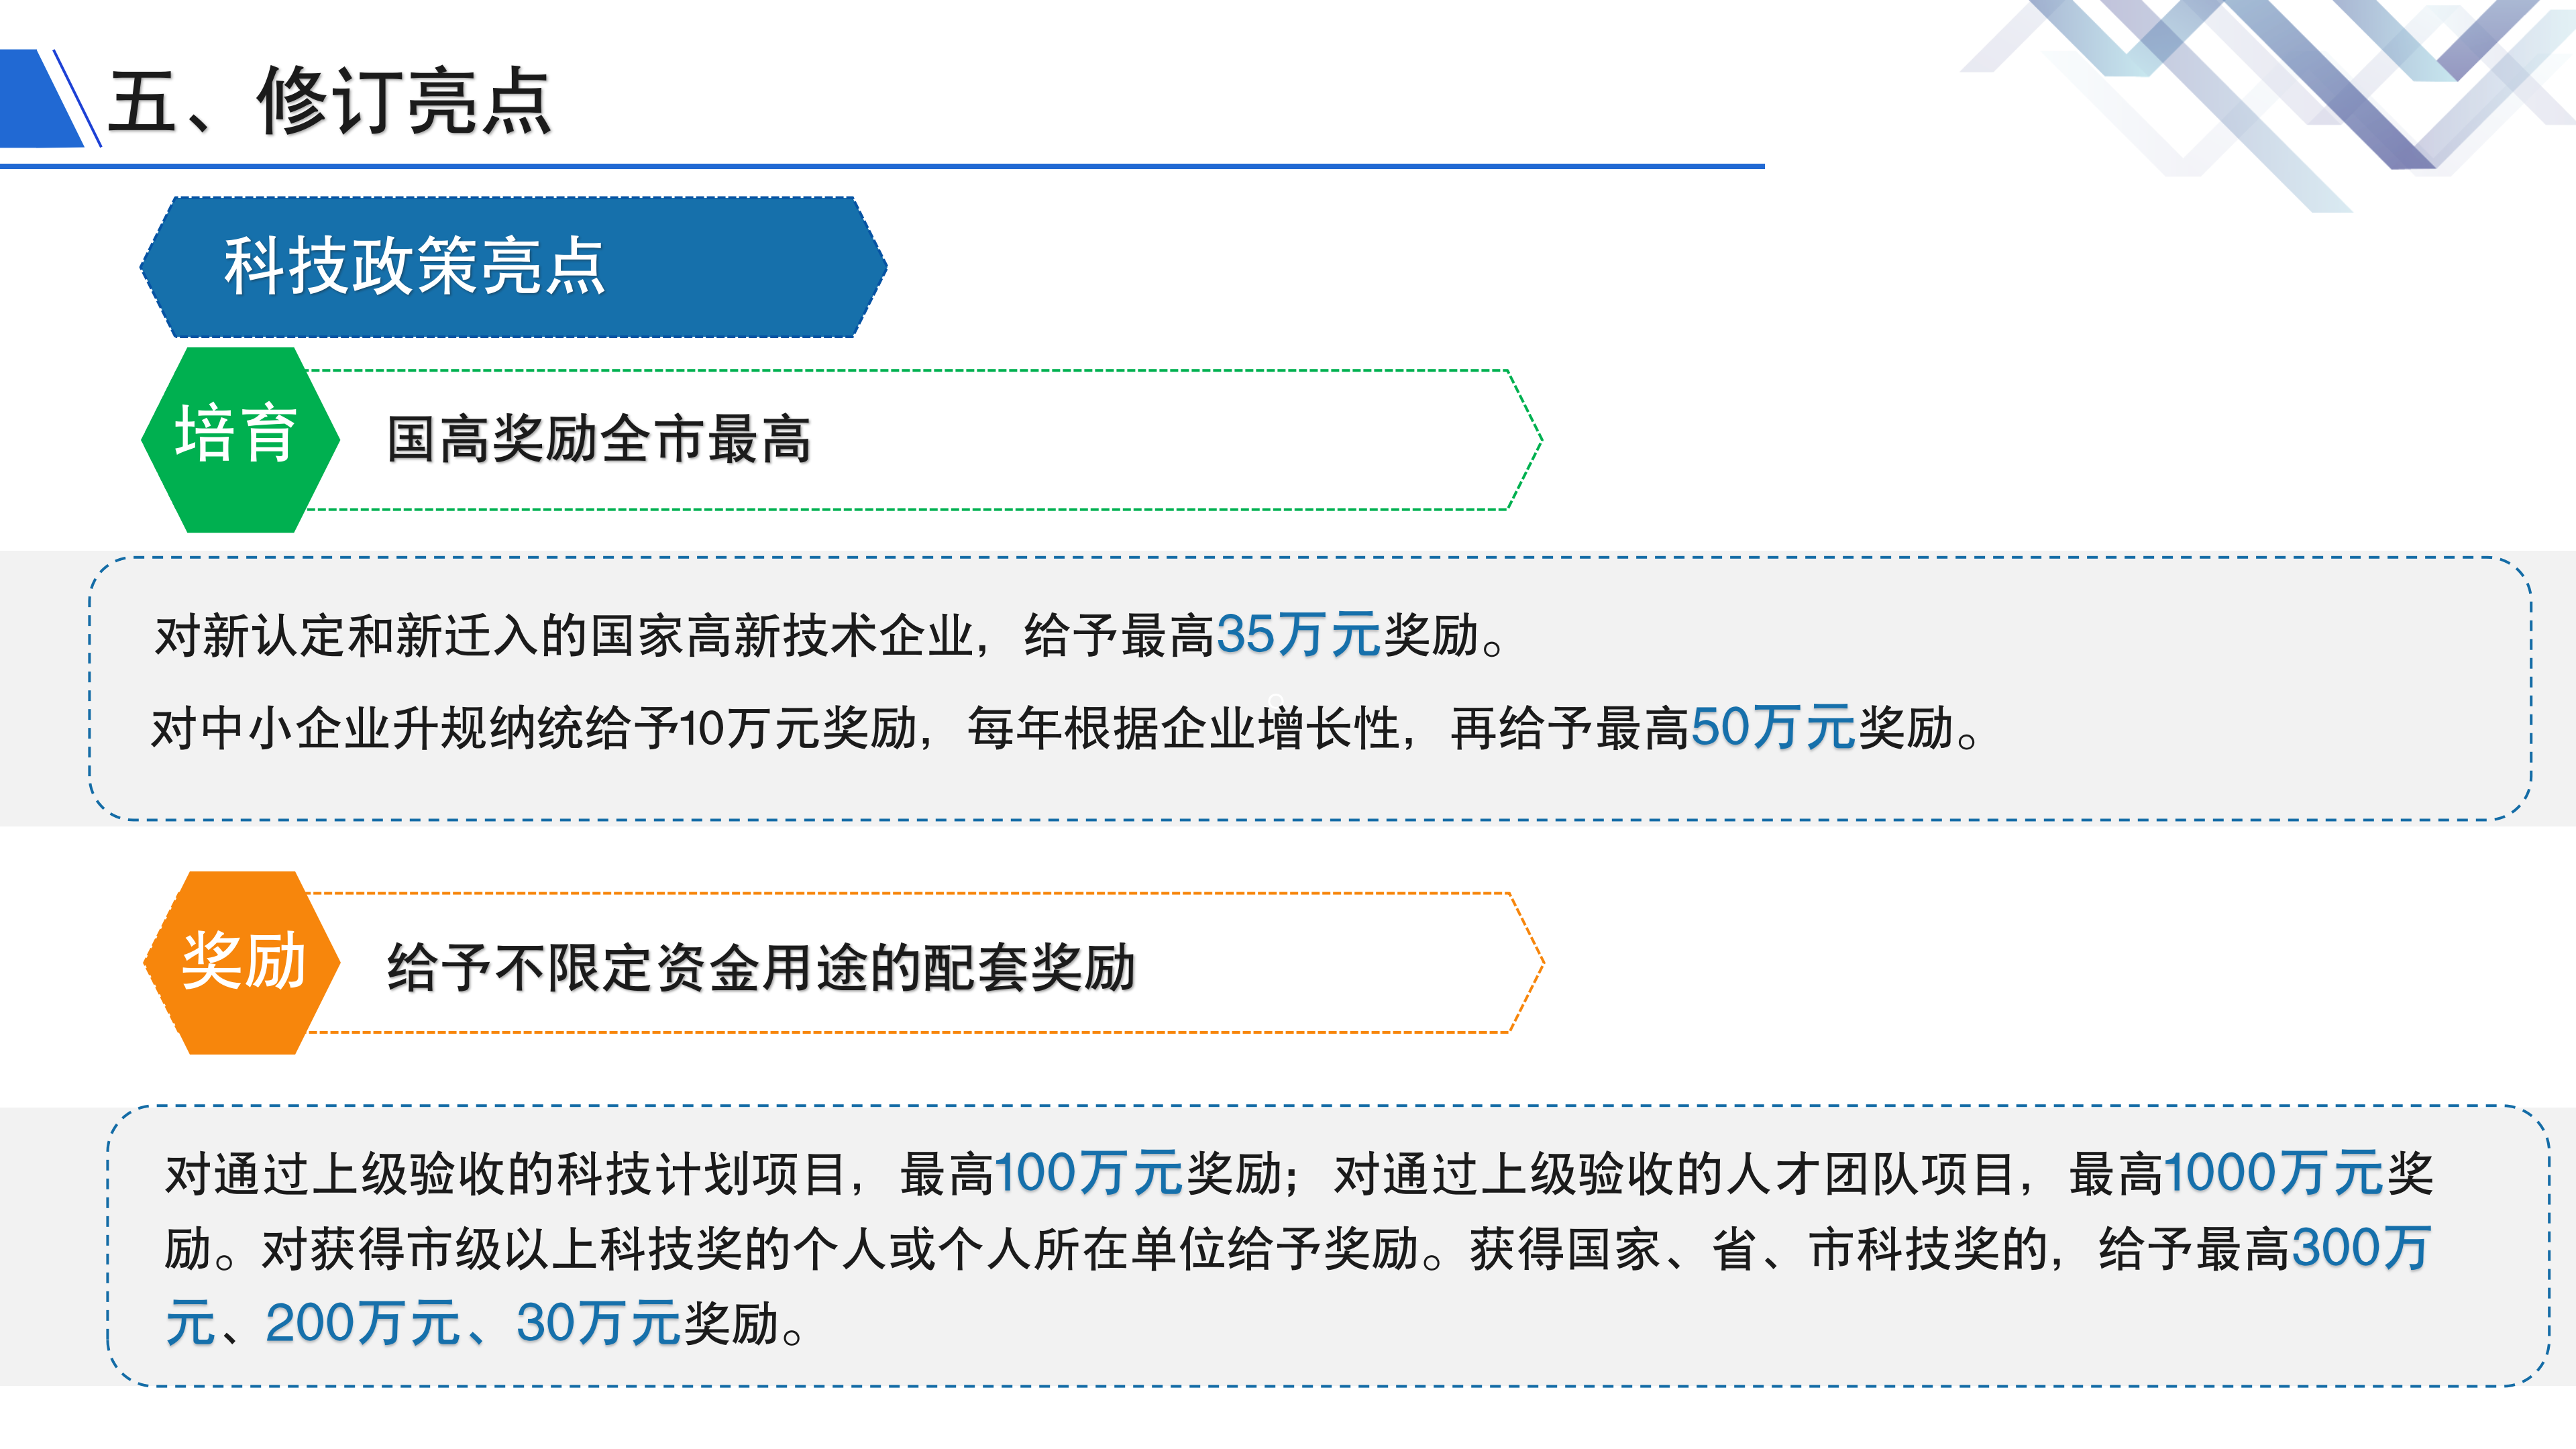 《深圳市大鹏新区关于加强科技研发促进技术创新的若干措施》政策解读_11.png